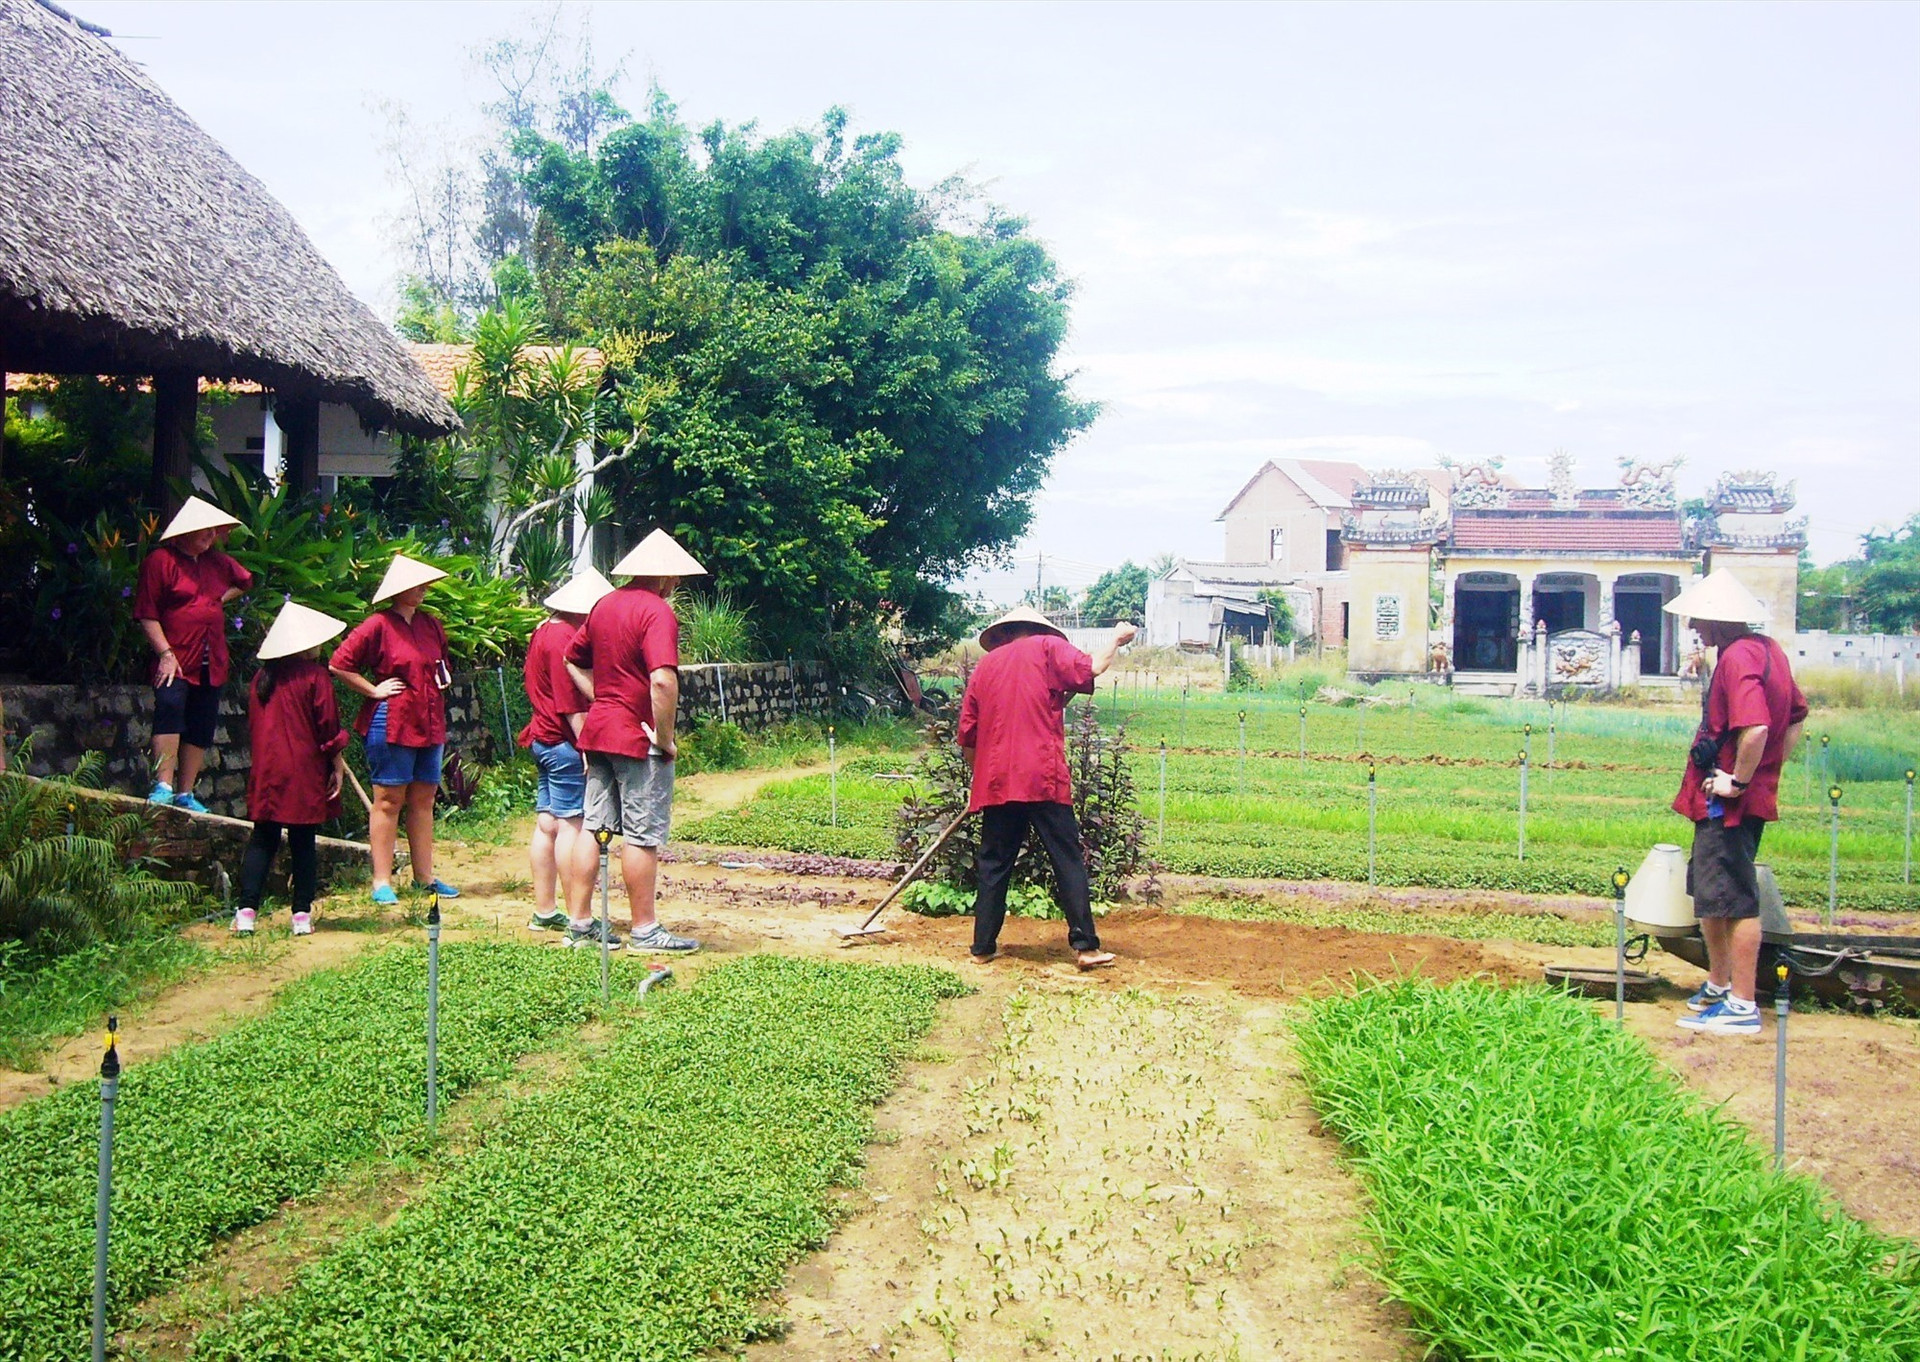 Farm tourism in Hoi An